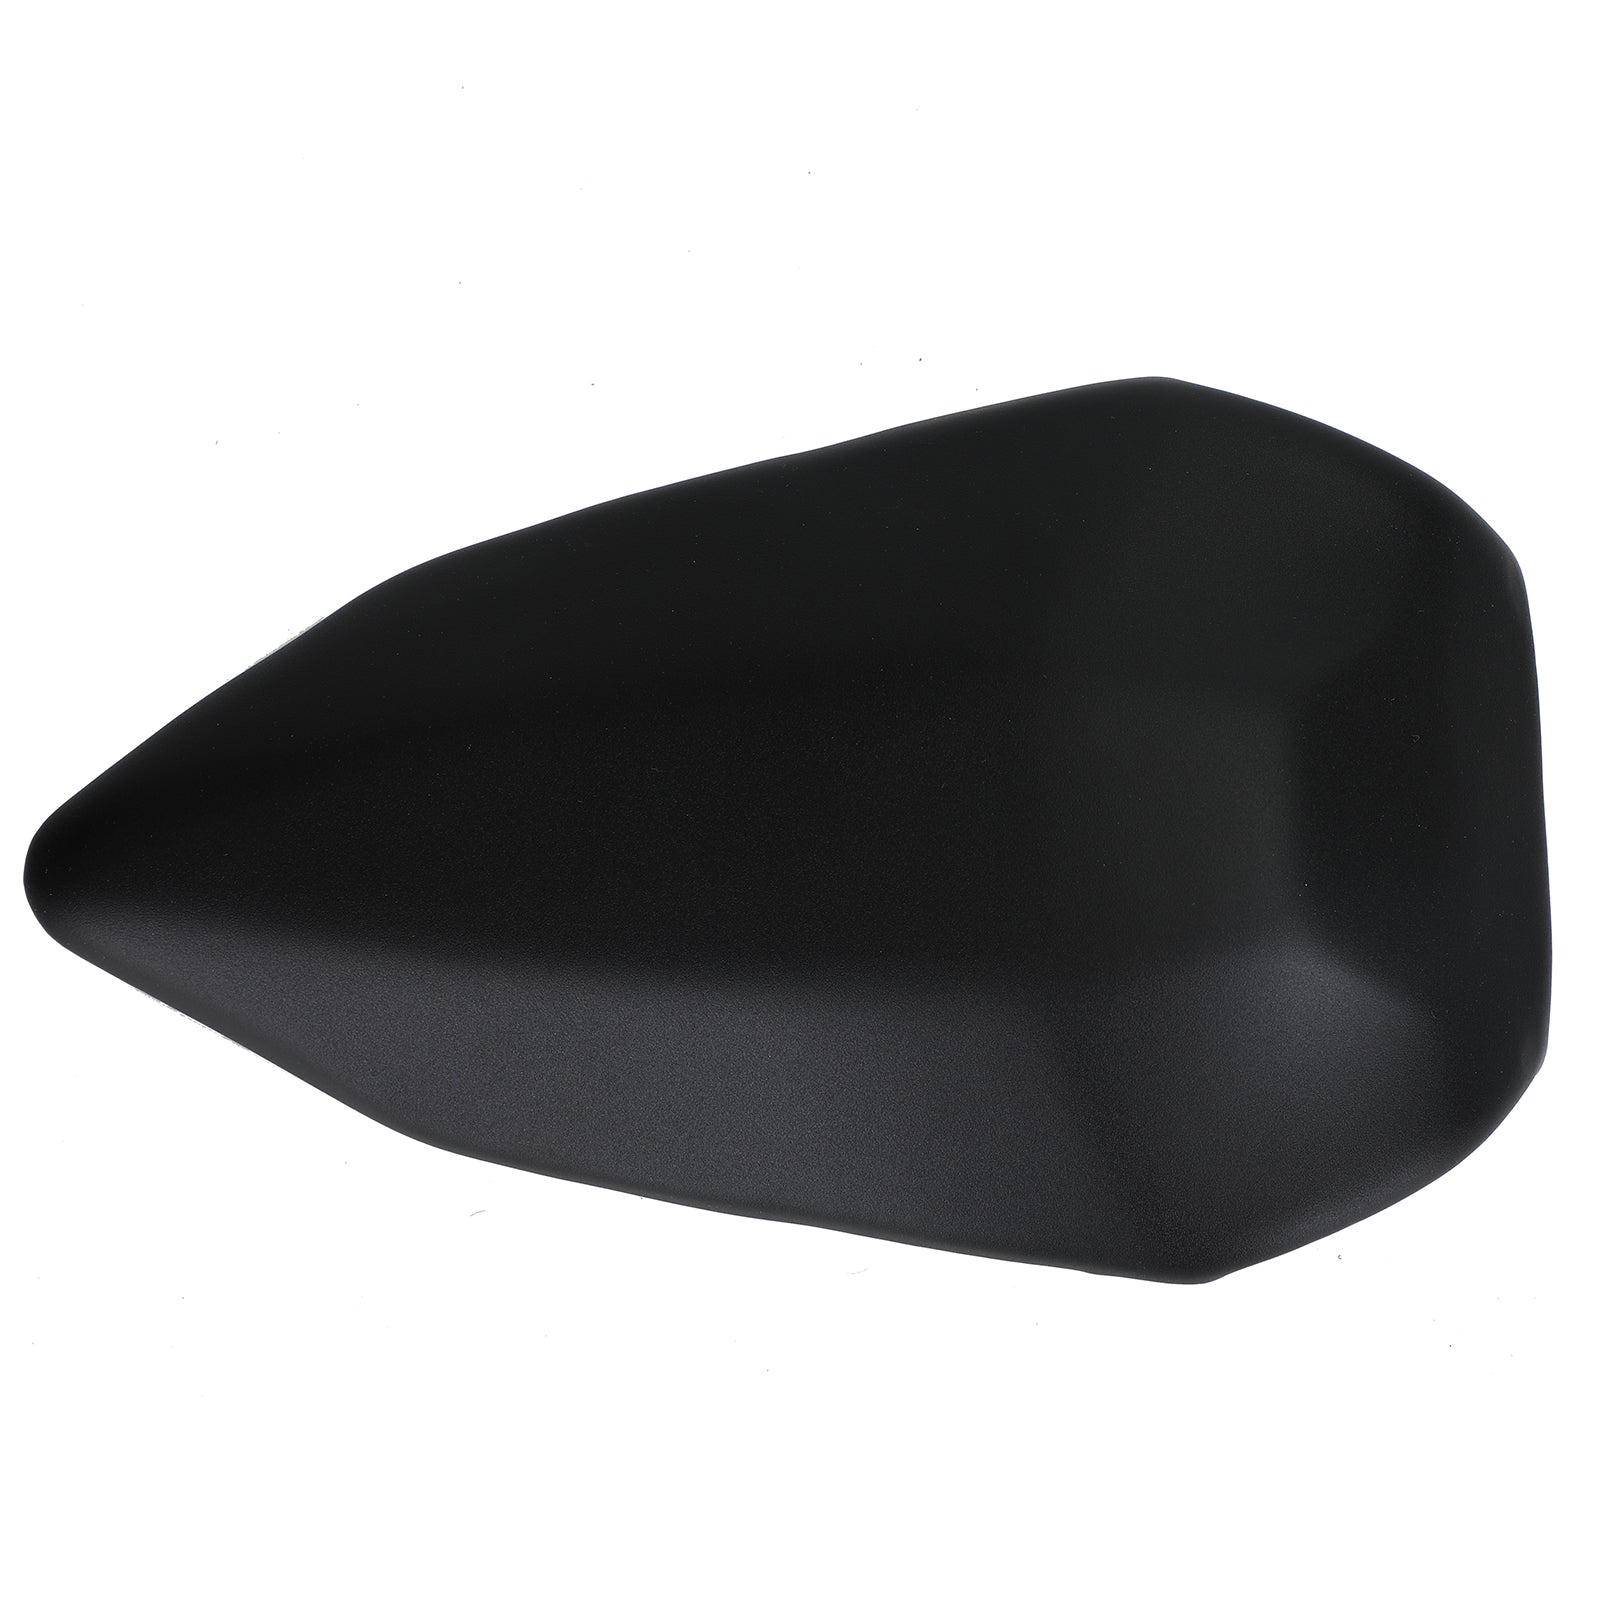 Cuscino nero per sedile passeggero posteriore adatto per Ducati 899 2012-2014 1199 2012-2014 generico